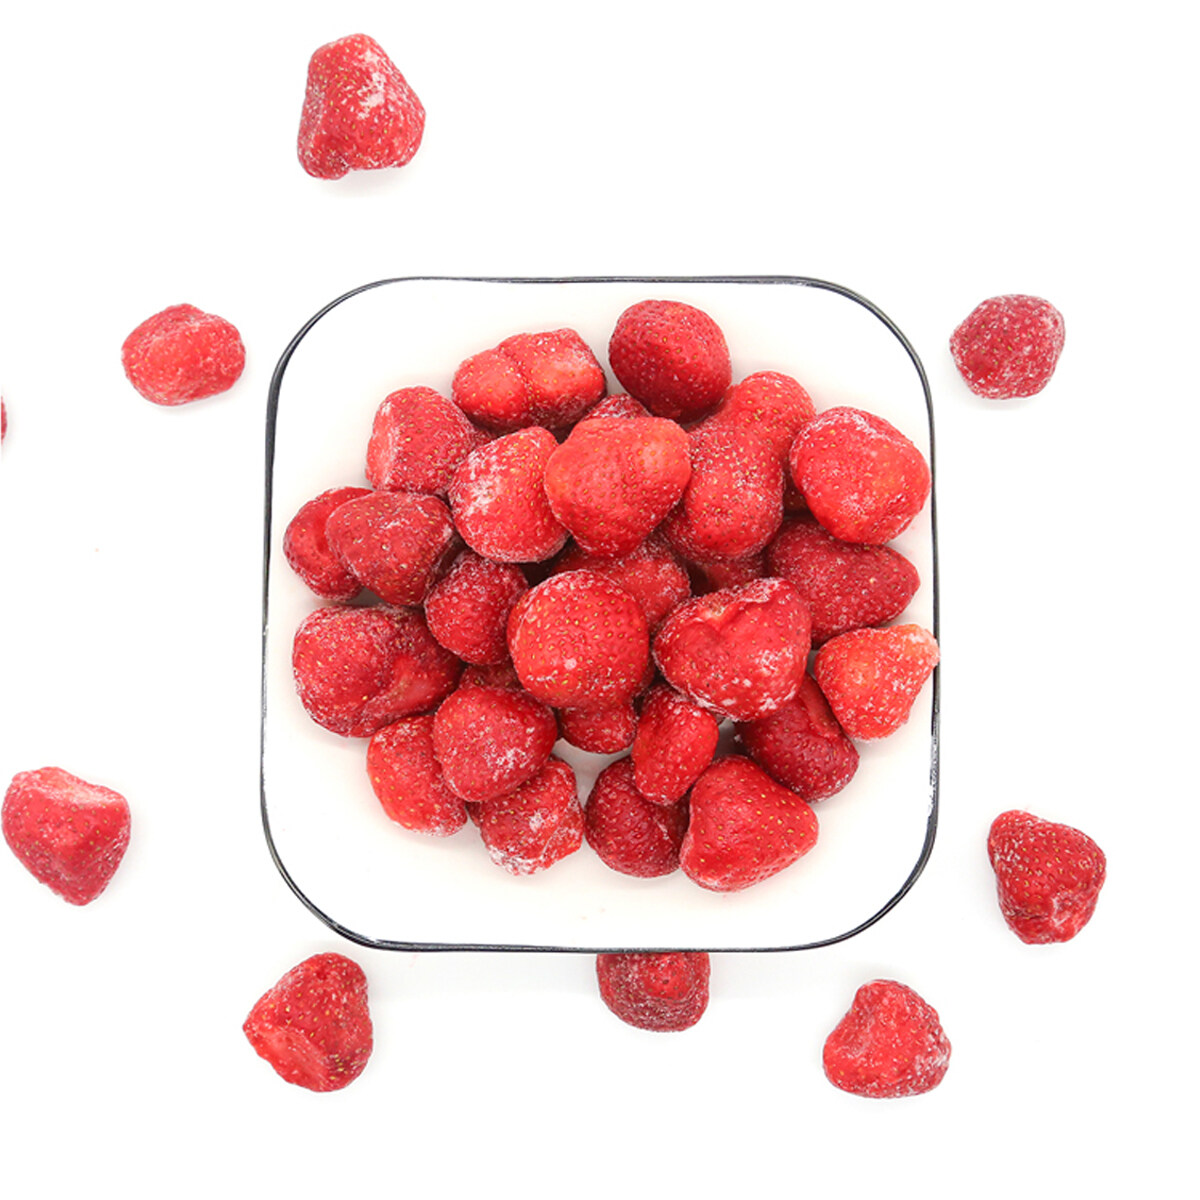 Custom IQF Frozen Raspberries, framboise de fruits congelés de haute qualité, framboises ODM congelée biologique, framboise Frozen OEM